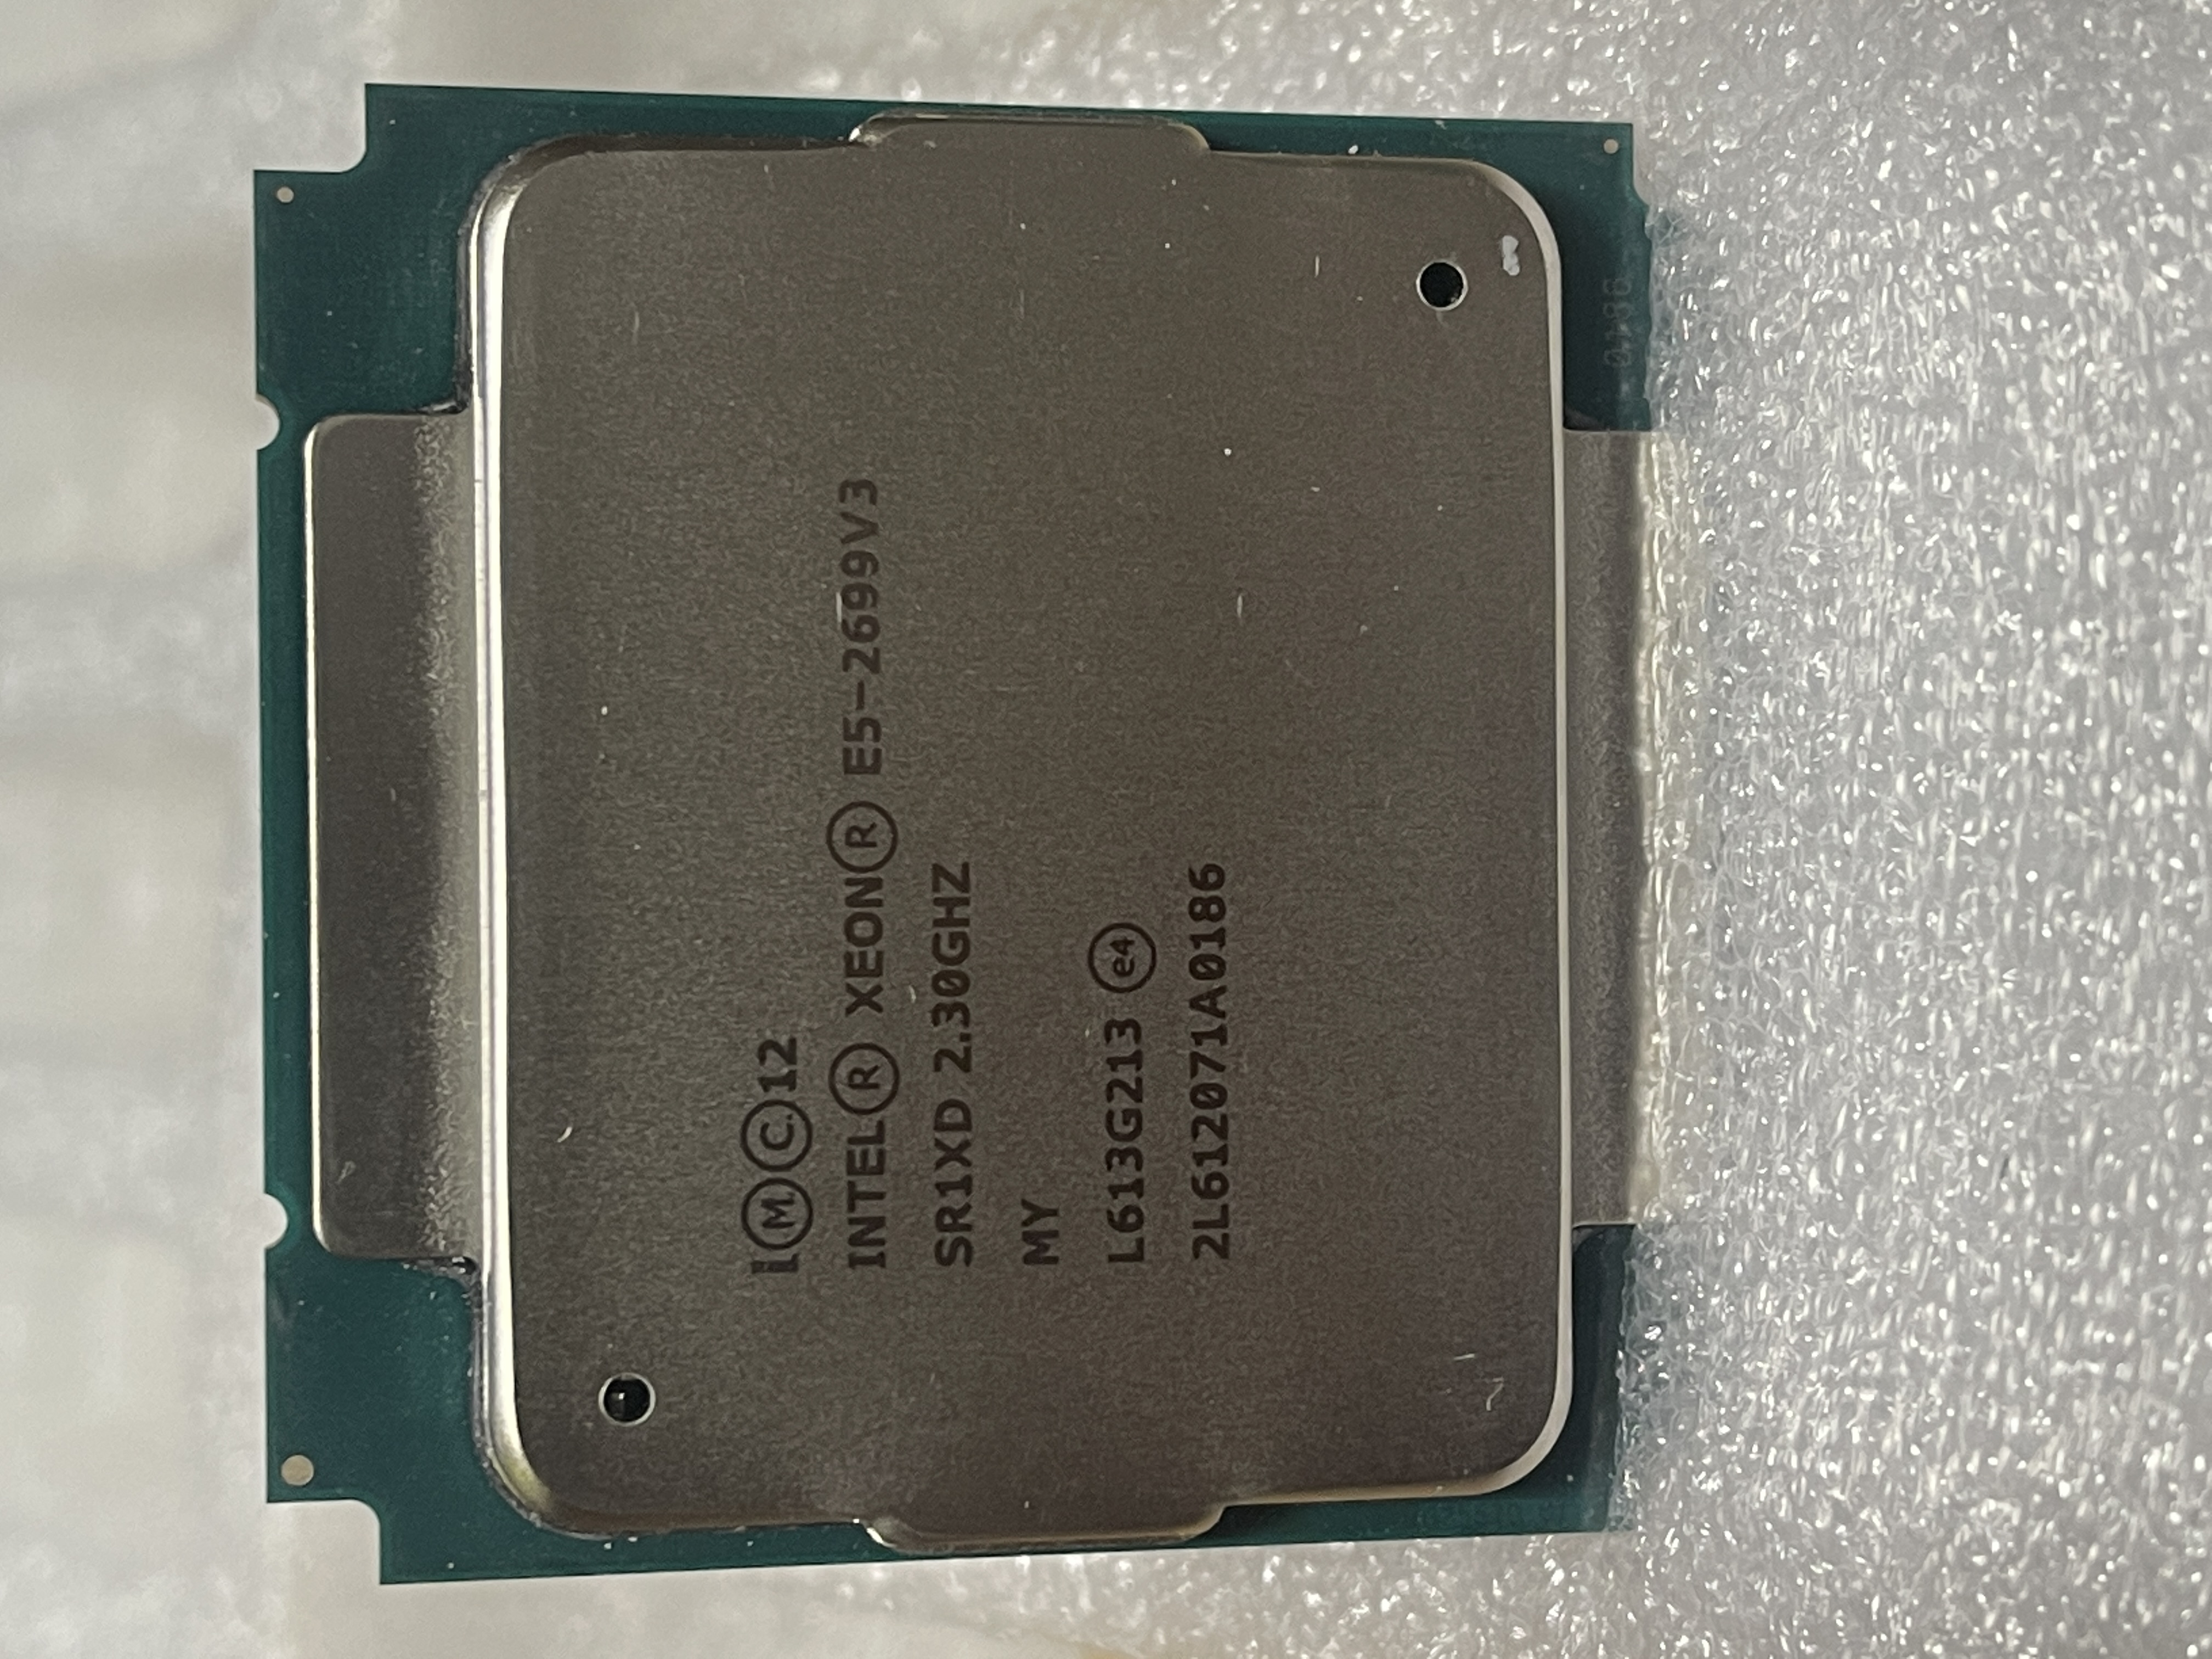 پردازنده سرور Intel Xeon Processor E5-2699 v3